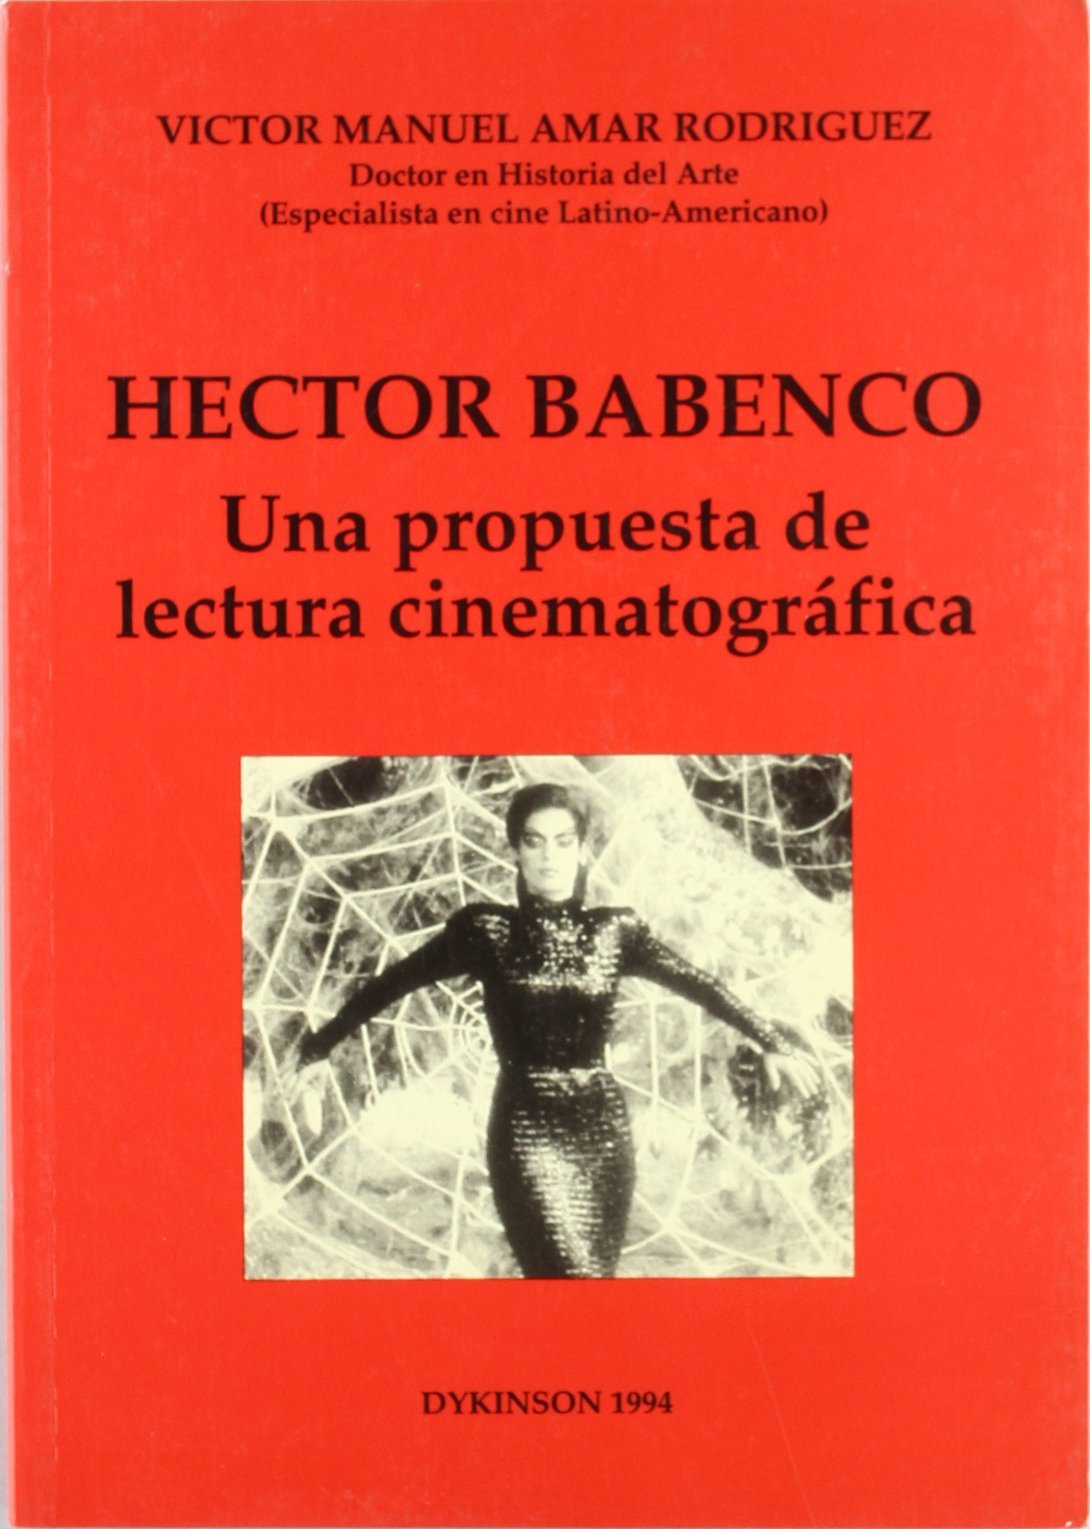 HECTOR BABENCO. UNA PROPUESTA DE LECTURA CINEMATOGRÁFICA.